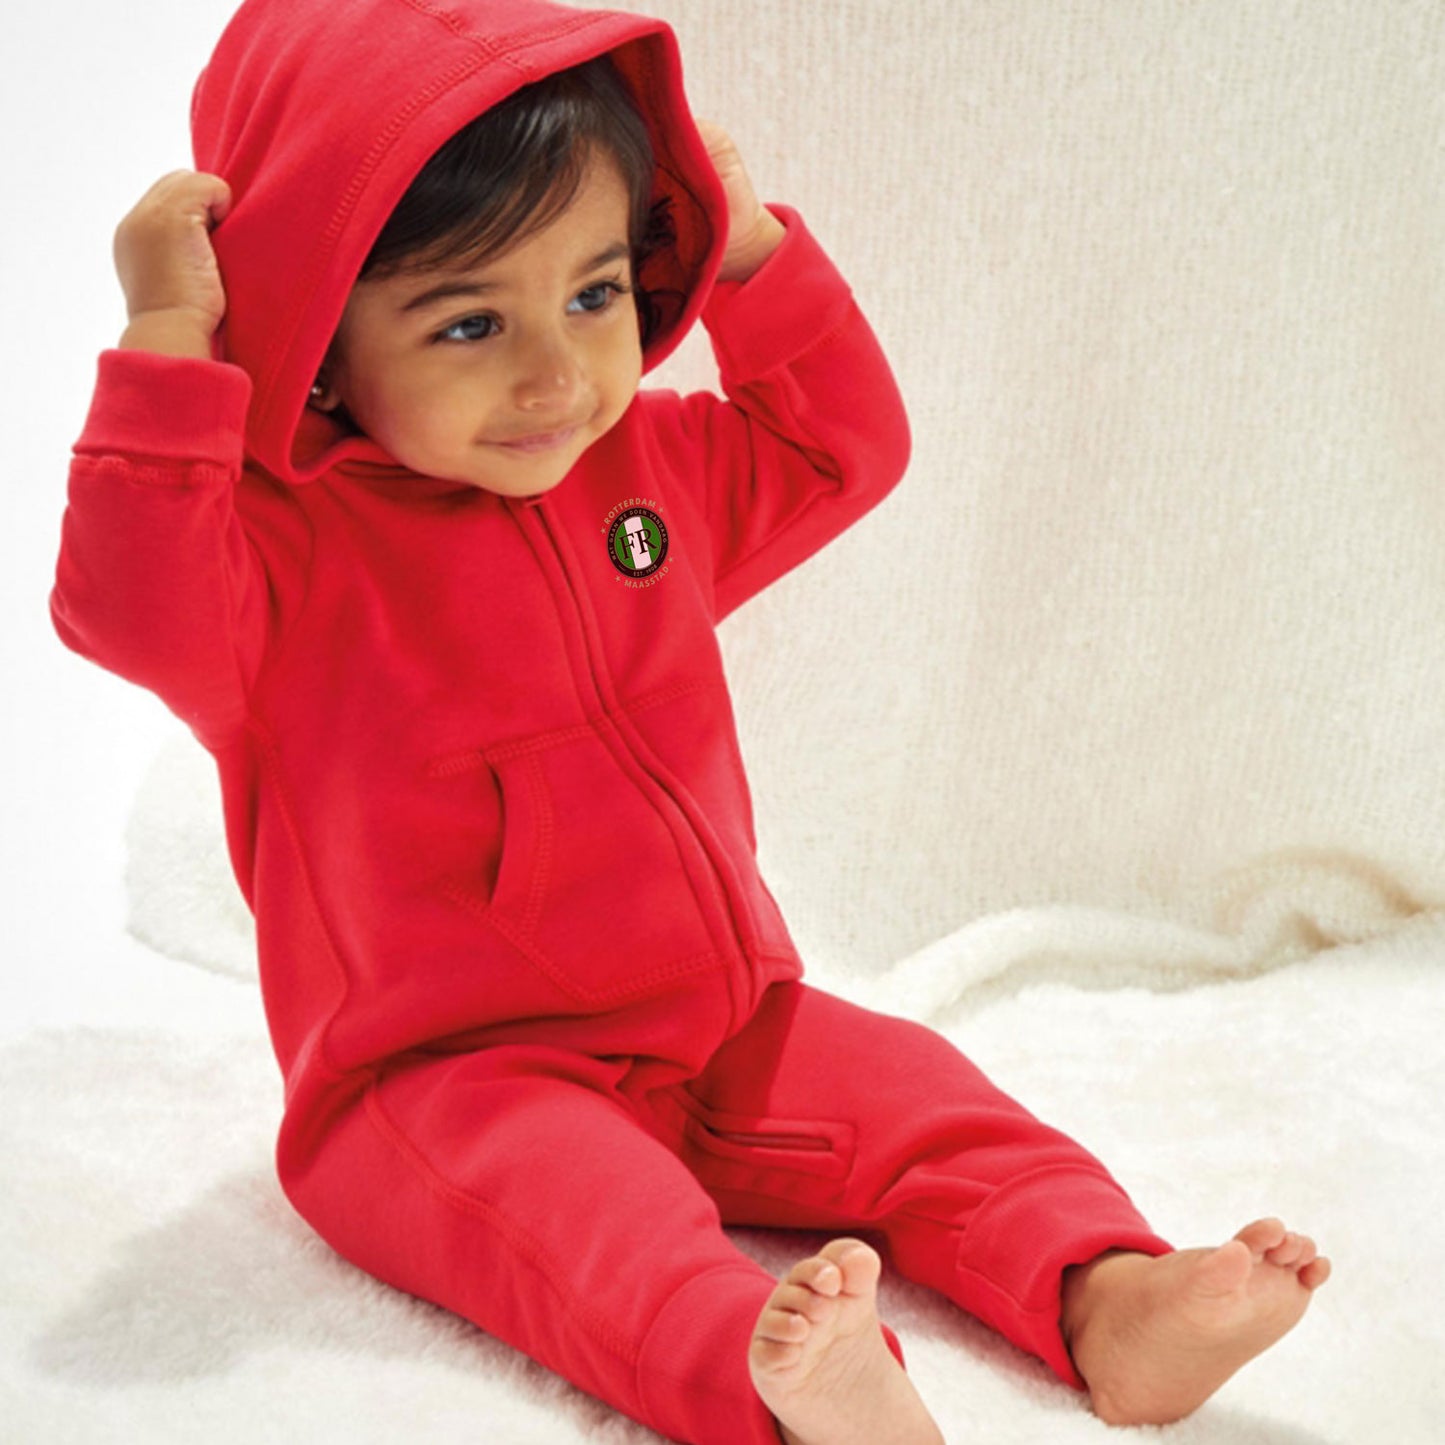 Rode Baby onesie met Feyenoord logo